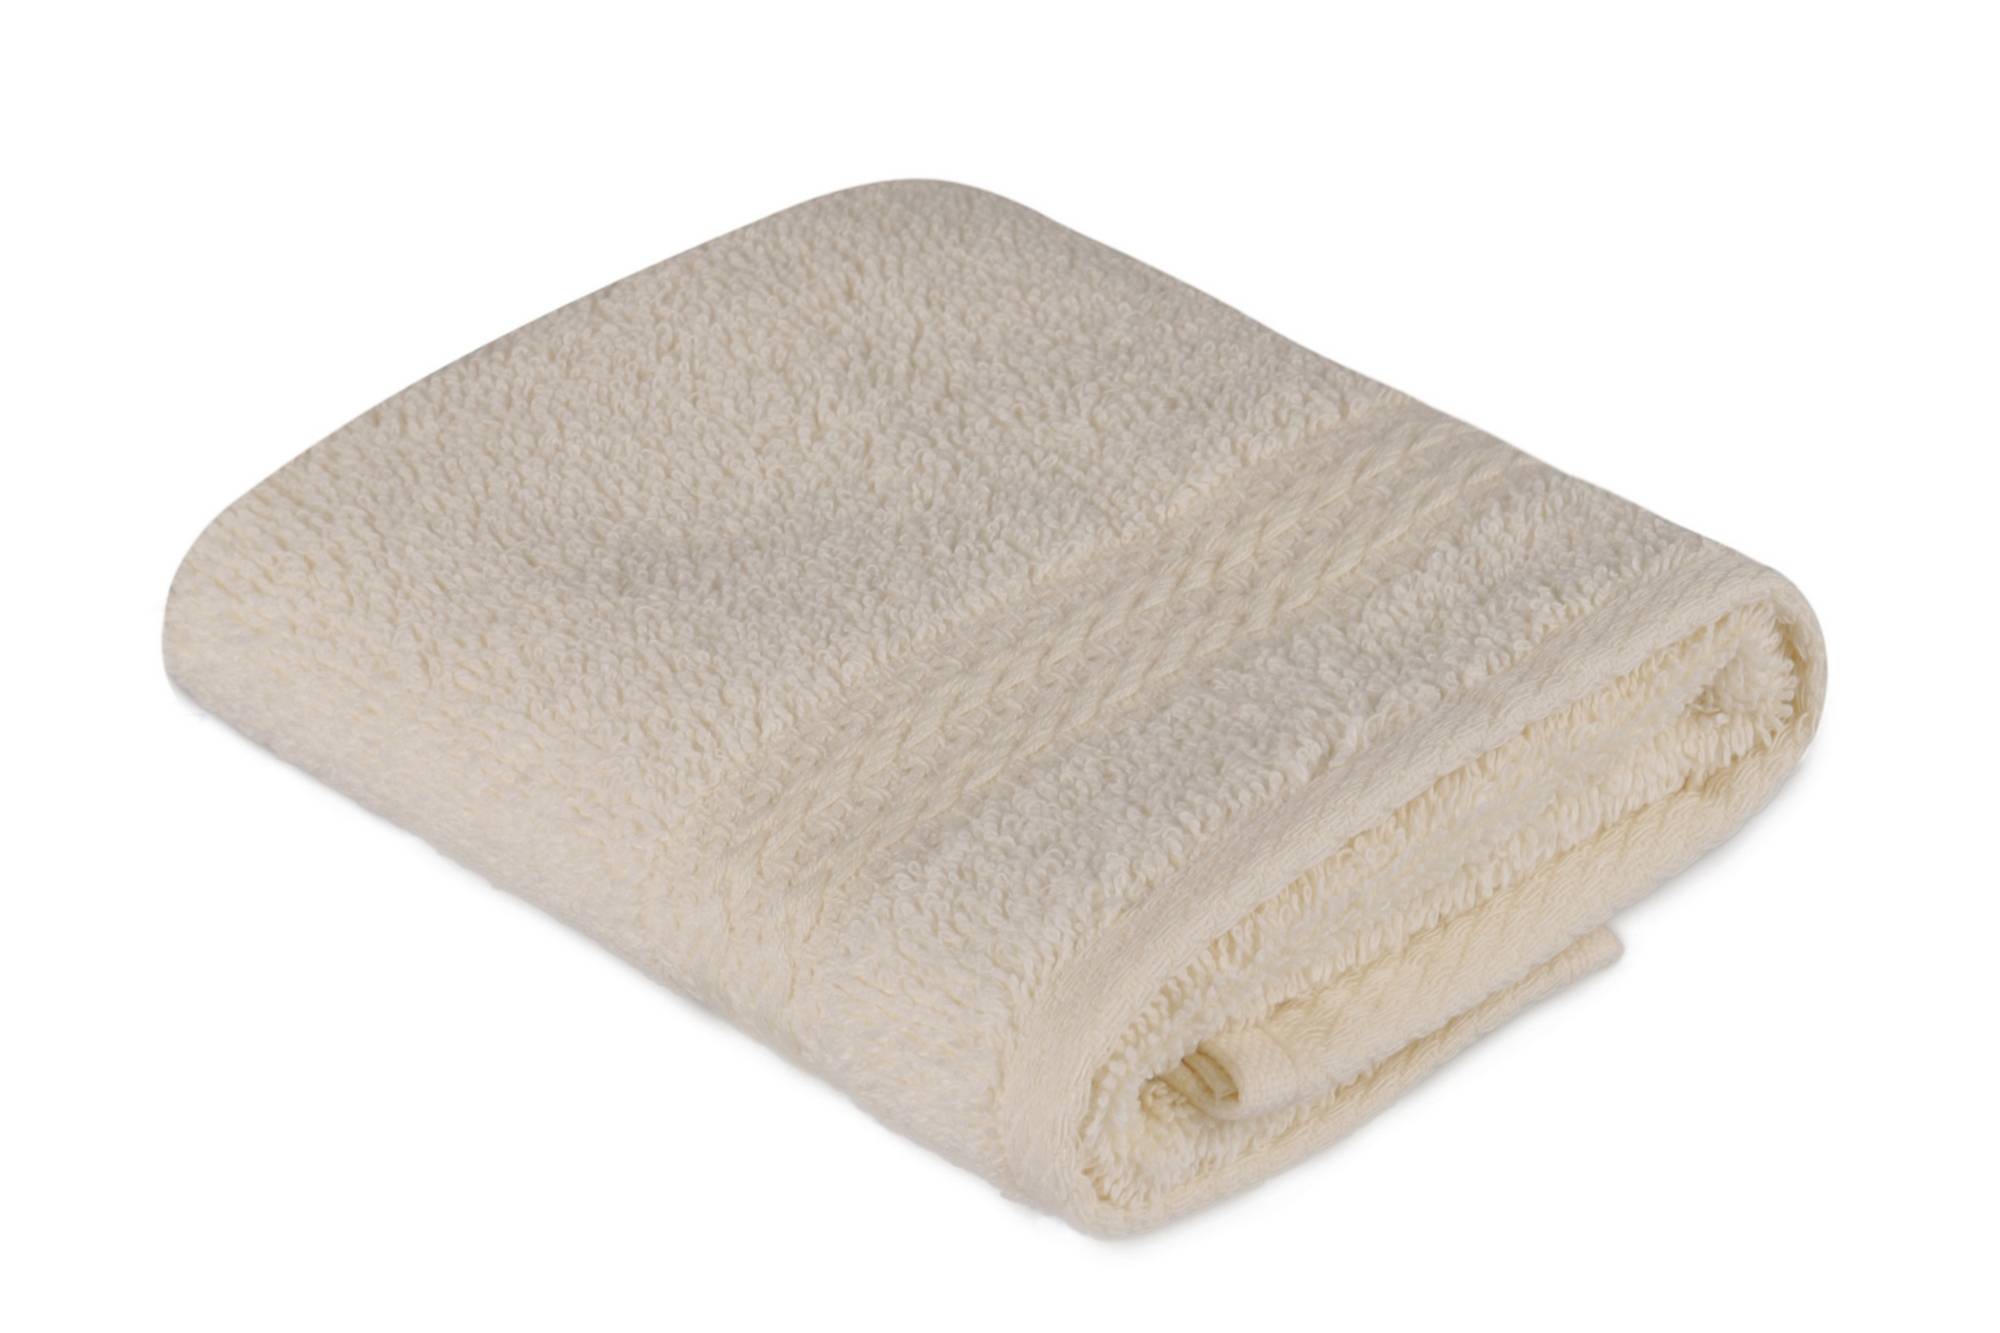 Handtuch Liteau mit drei gestickten Linien Sicco 30 x 50 cm 100% baumwollstoff Grège